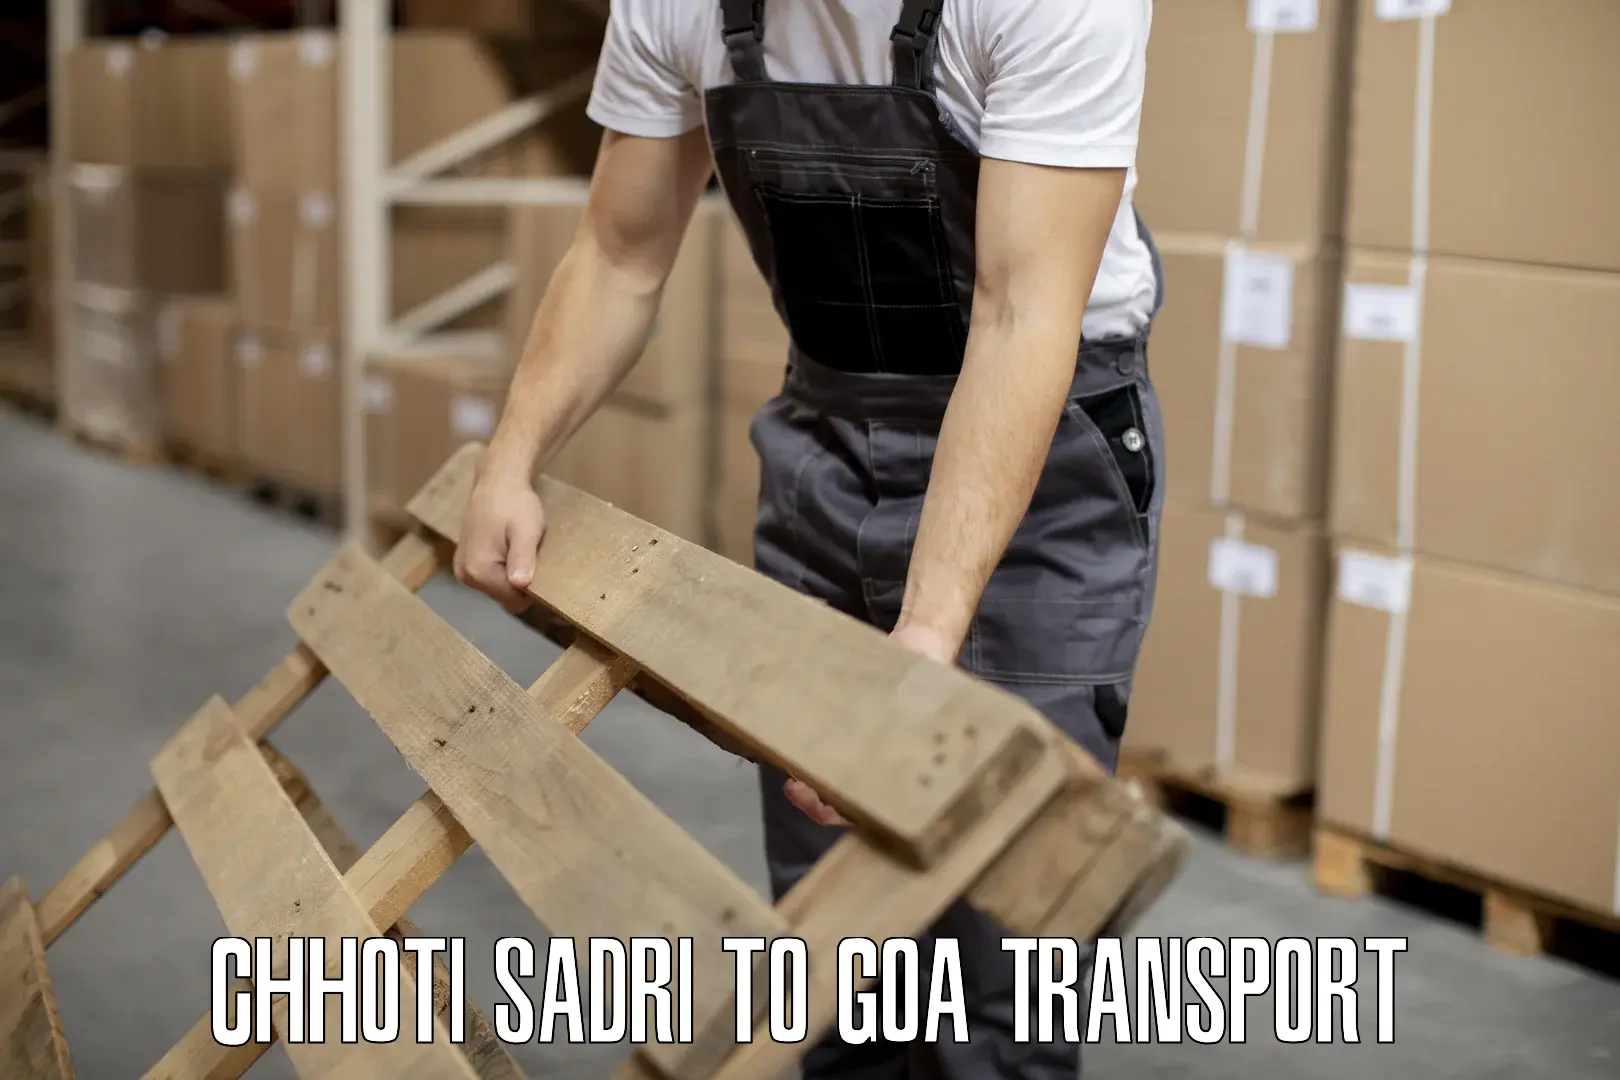 Air freight transport services Chhoti Sadri to Goa